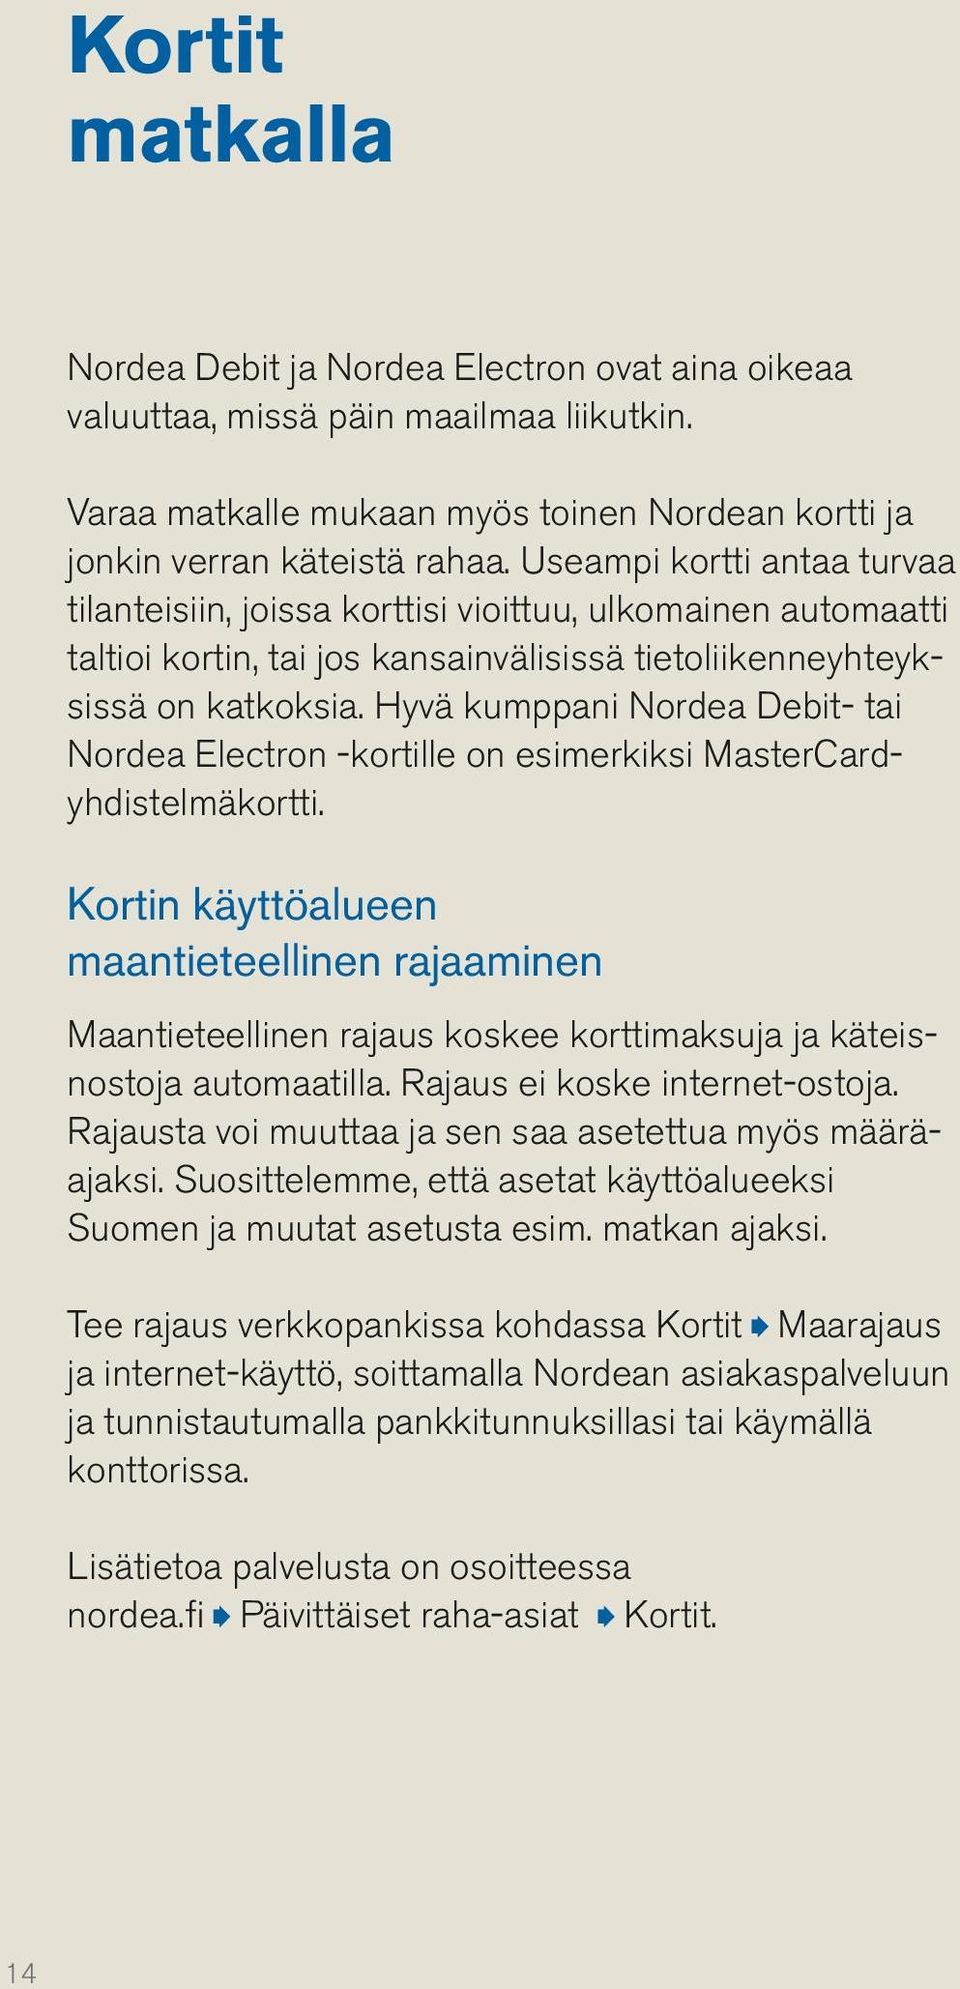 Hyvä kumppani Nordea Debit- tai Nordea Electron -kortille on esimerkiksi MasterCardyhdistelmäkortti.